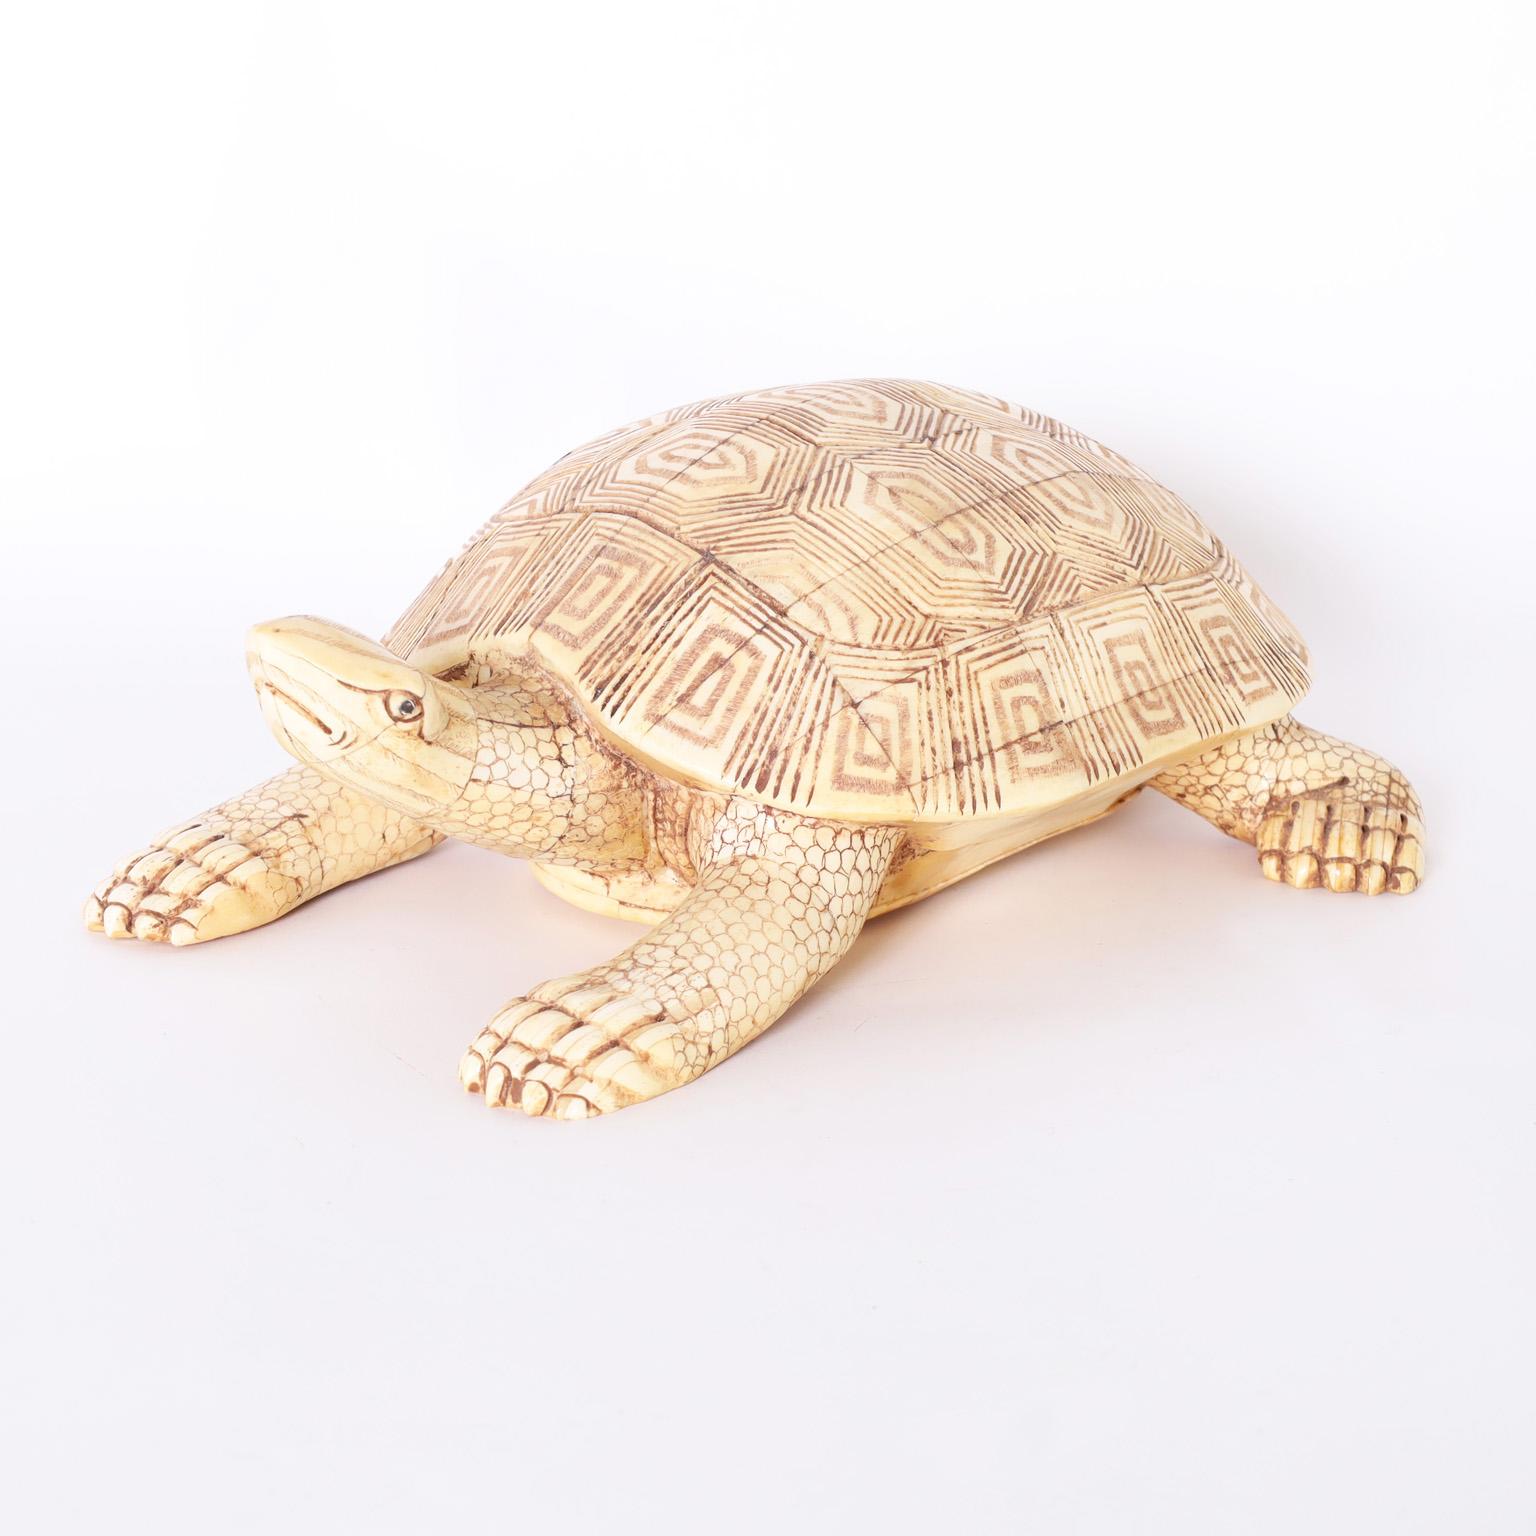 turtle cardboard sculpture